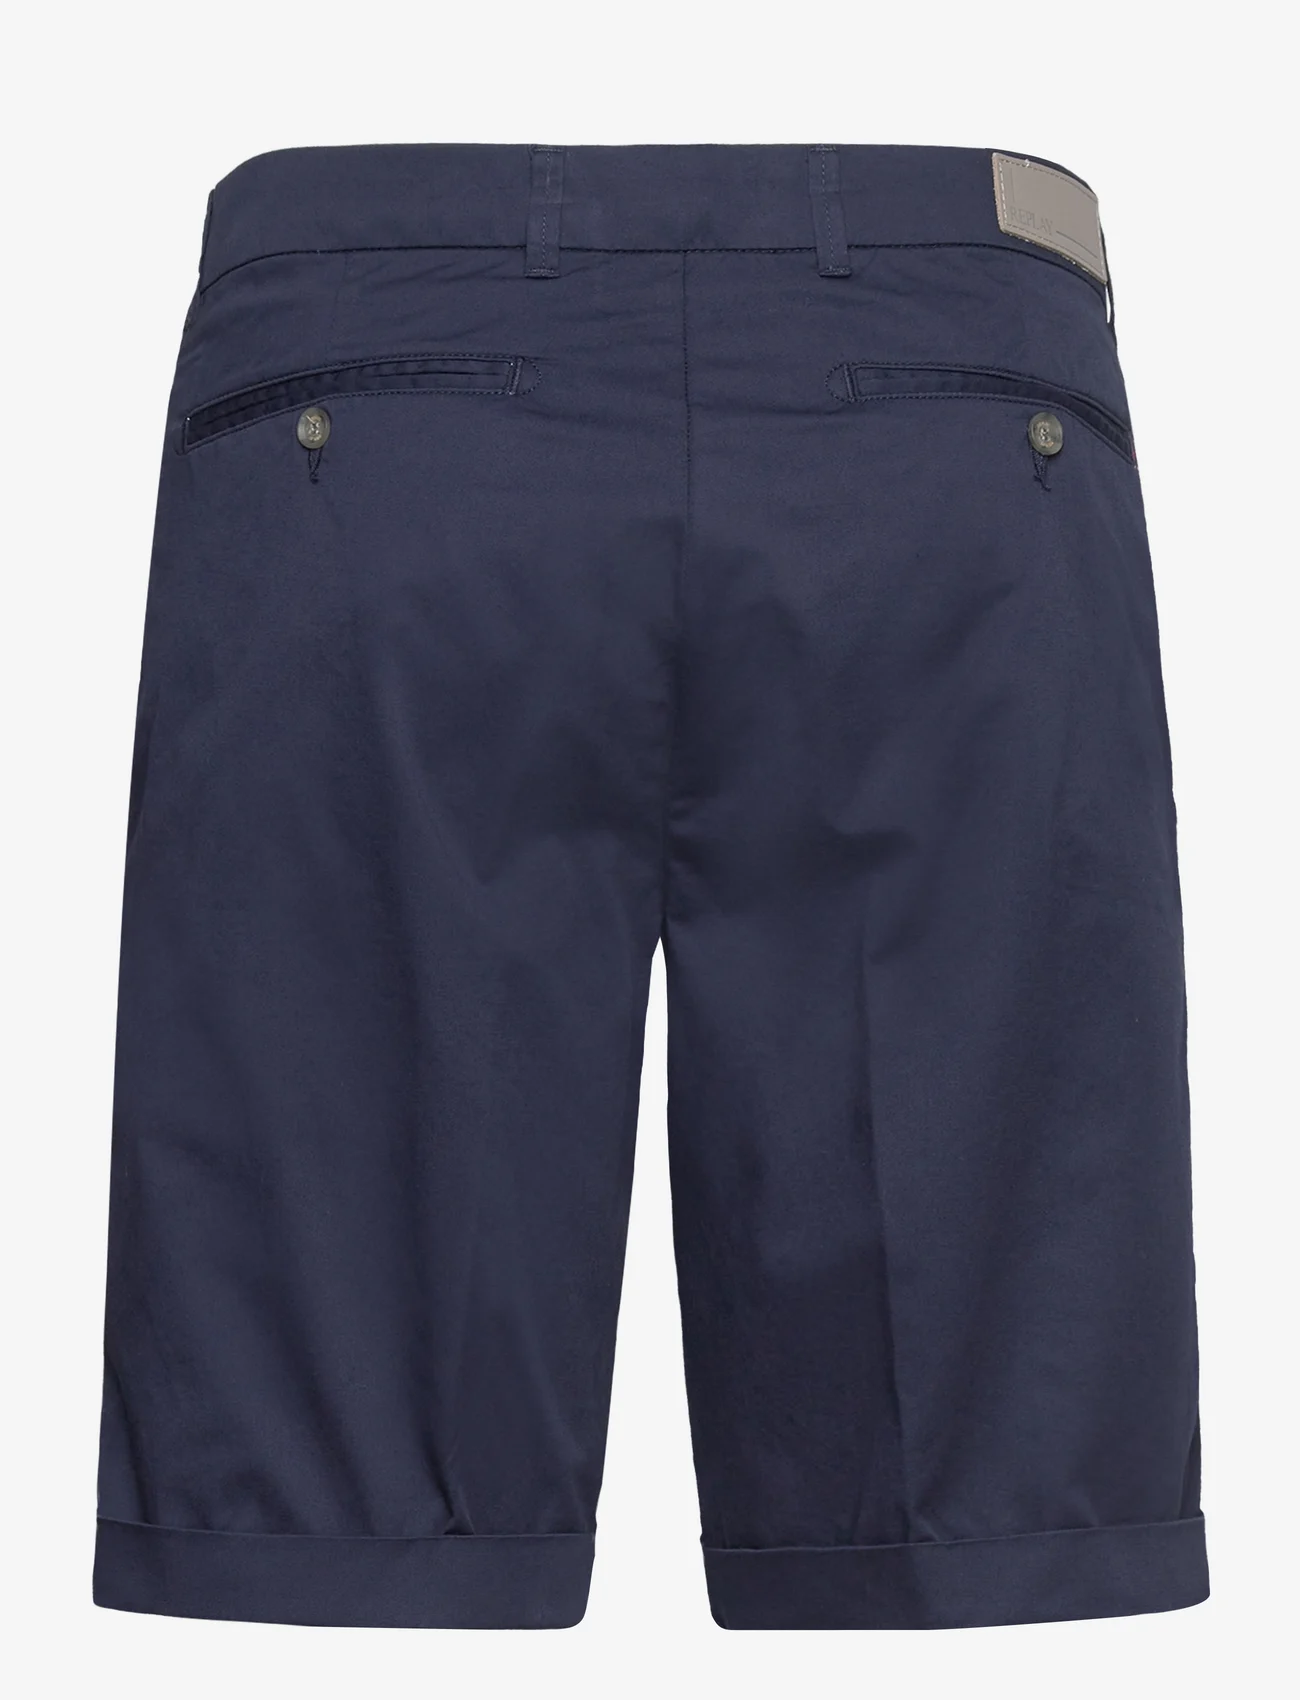 Replay - Shorts SLIM - „chino“ stiliaus šortai - blue - 1